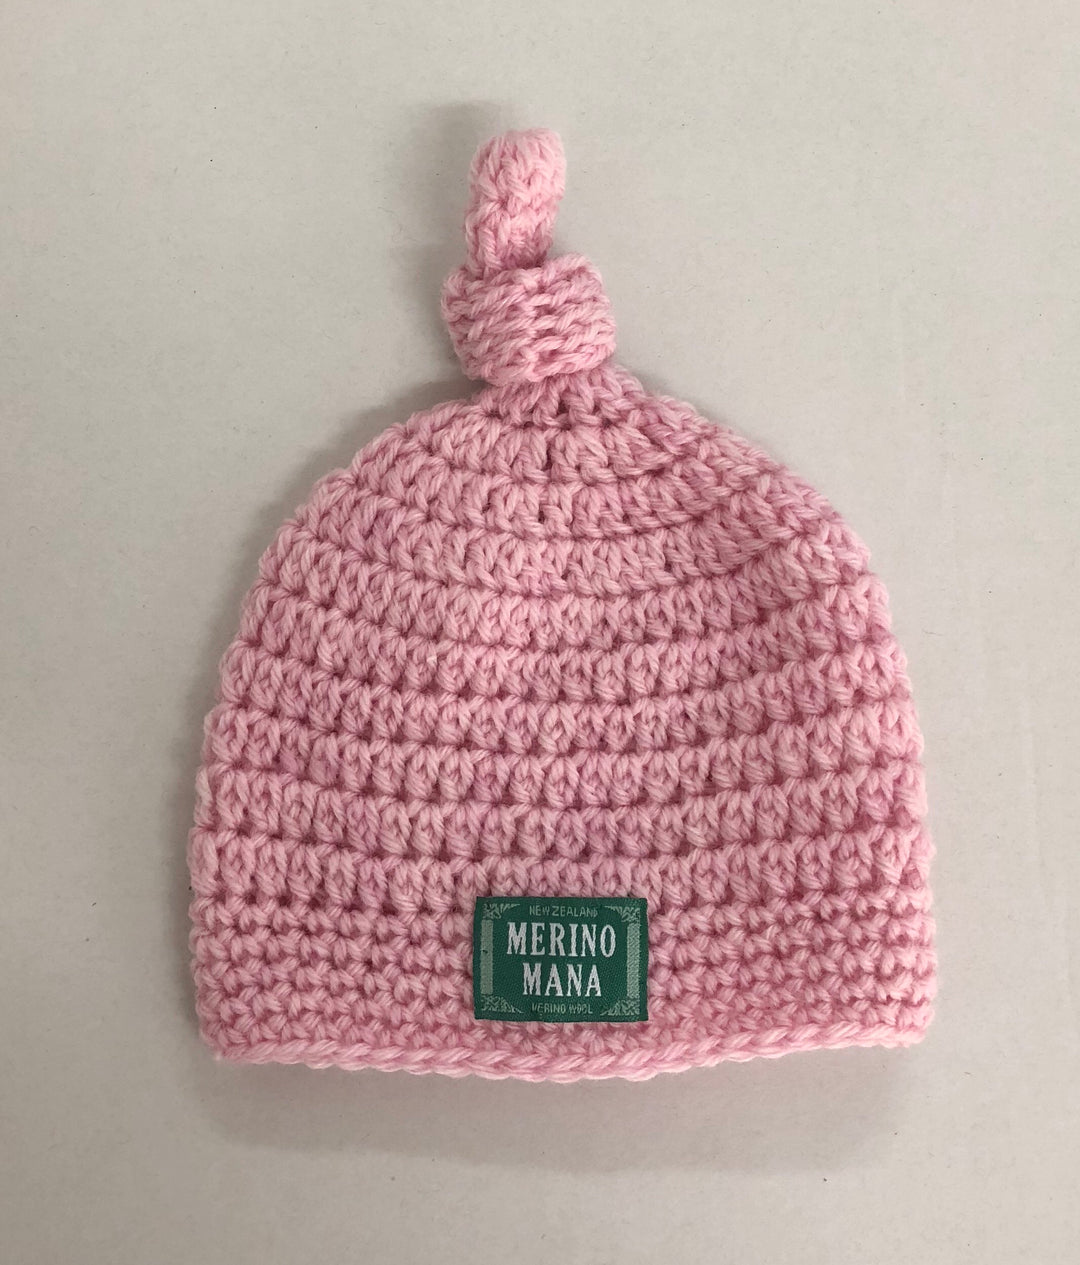 Merino Wool Crochet Baby Beanie